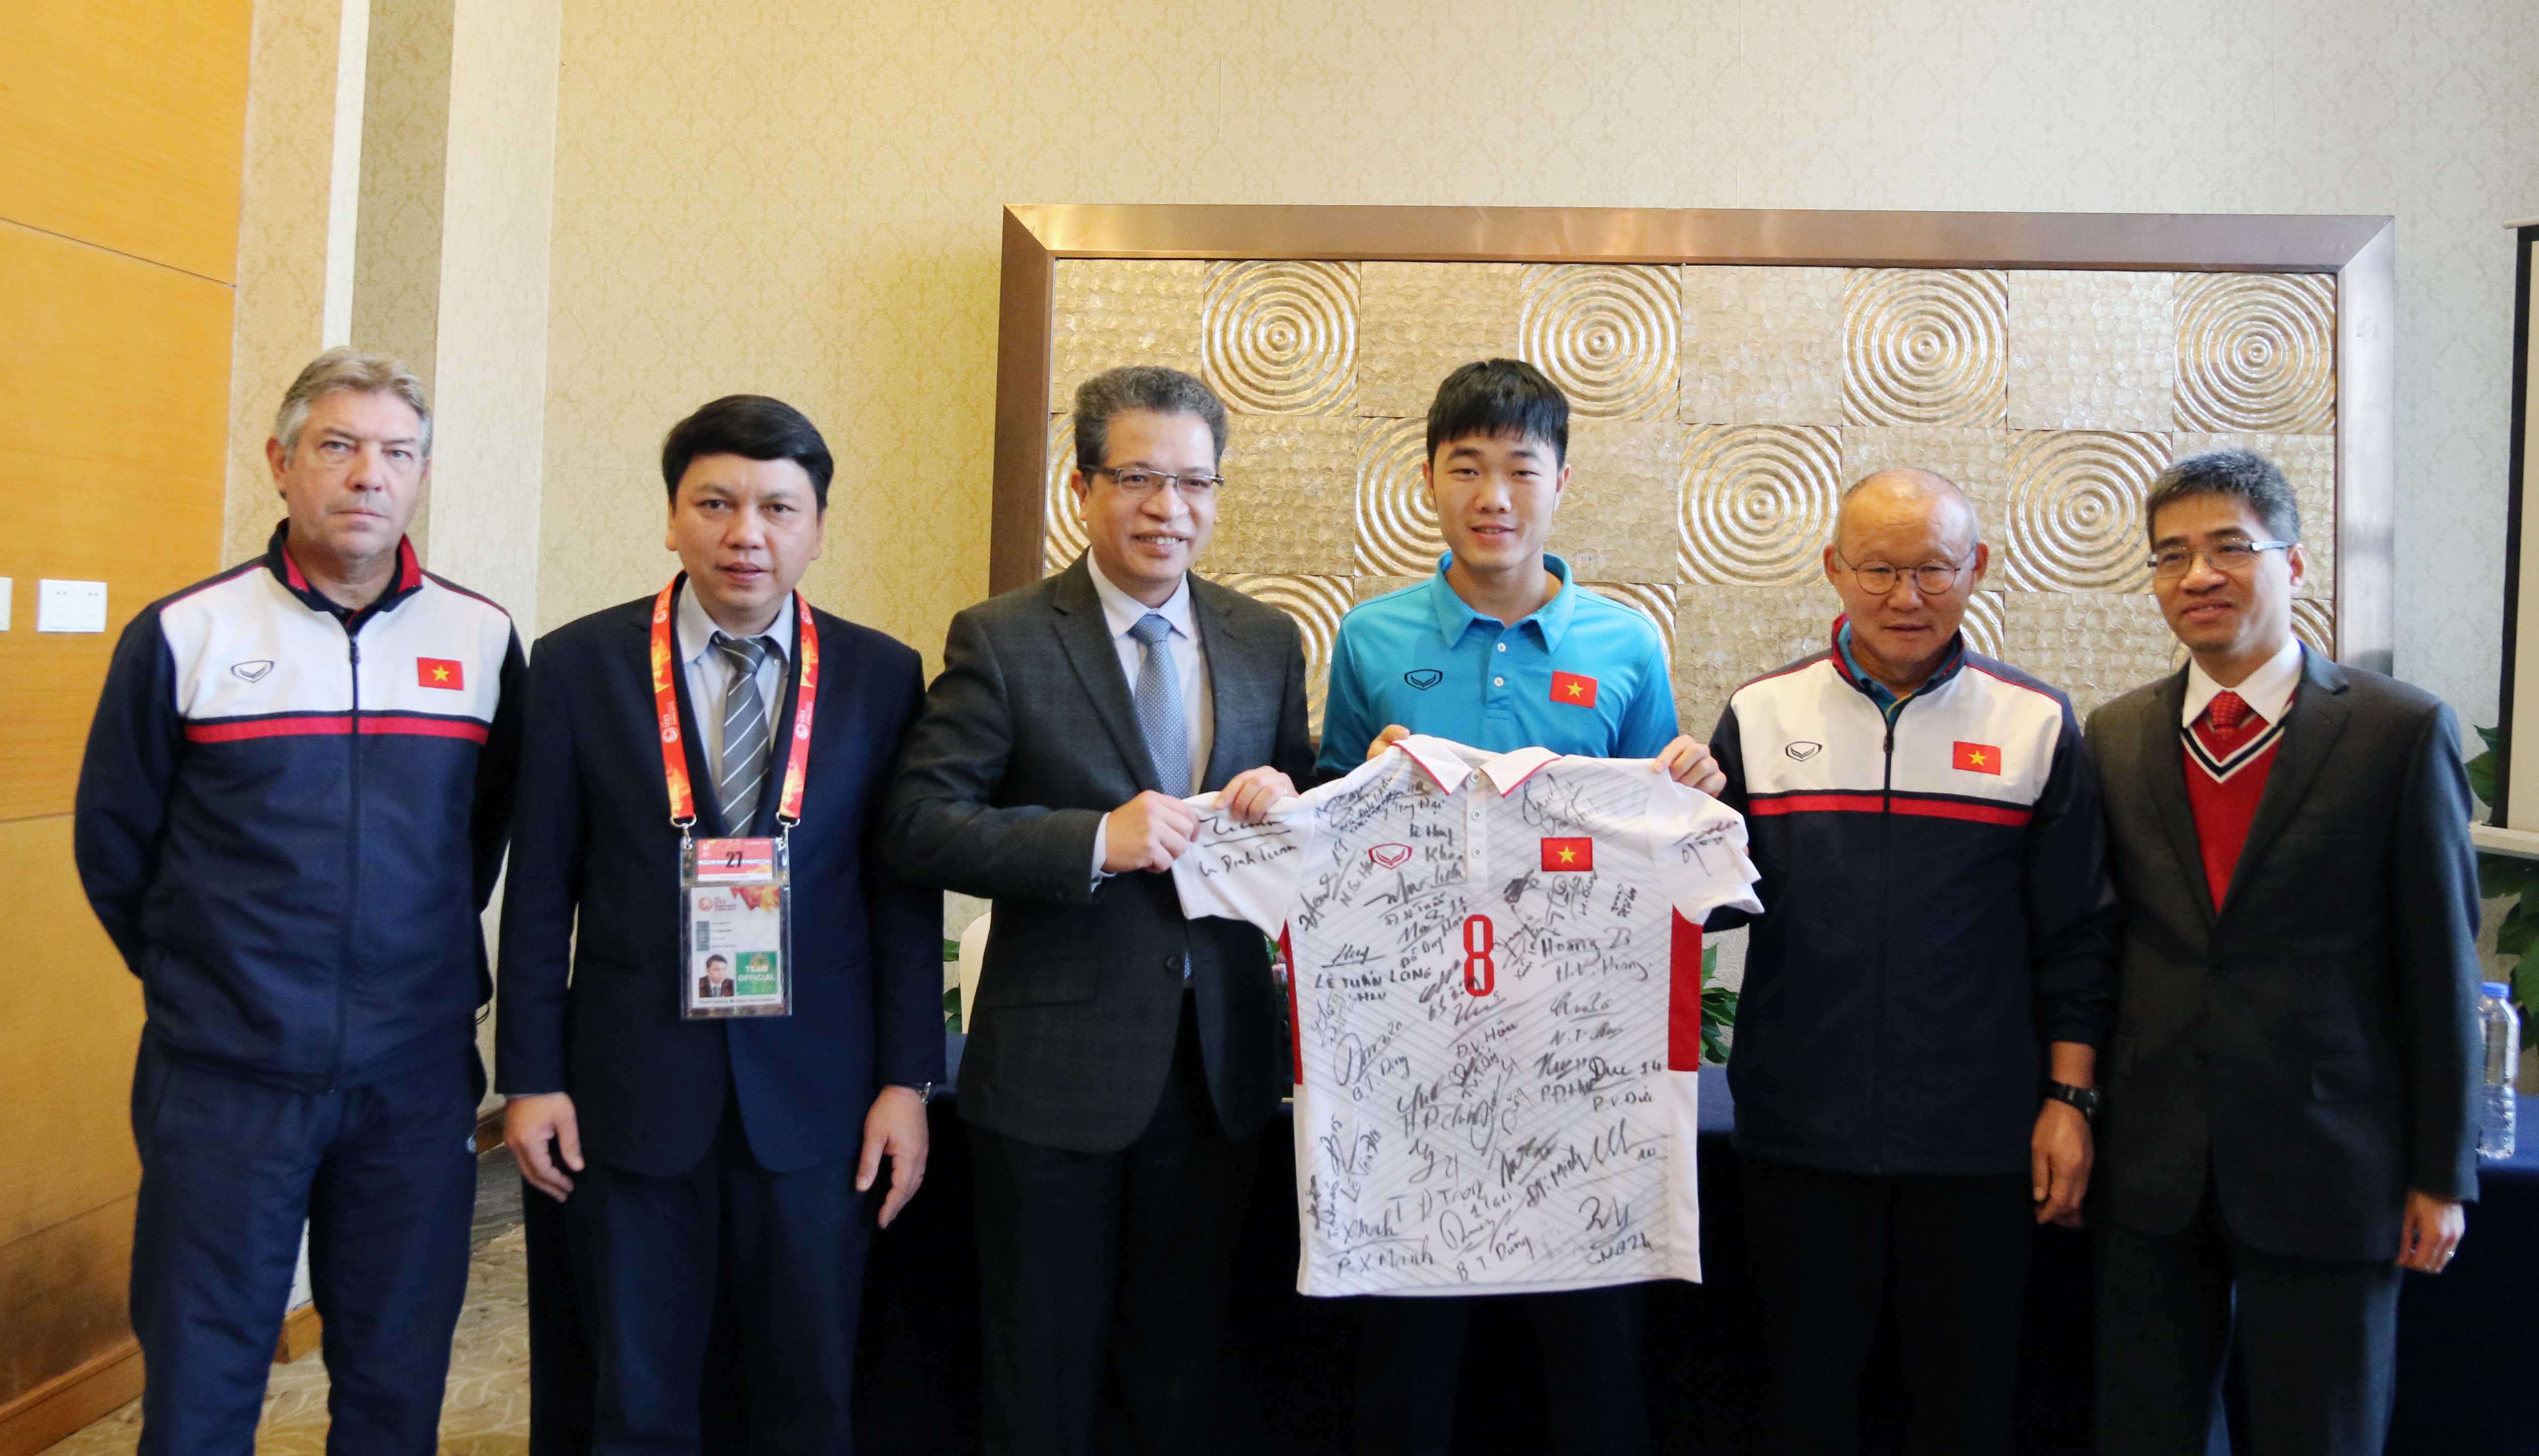 U23 Việt Nam được tiếp “Doping” trước trận bán kết gặp U23 Qata - Bóng Đá